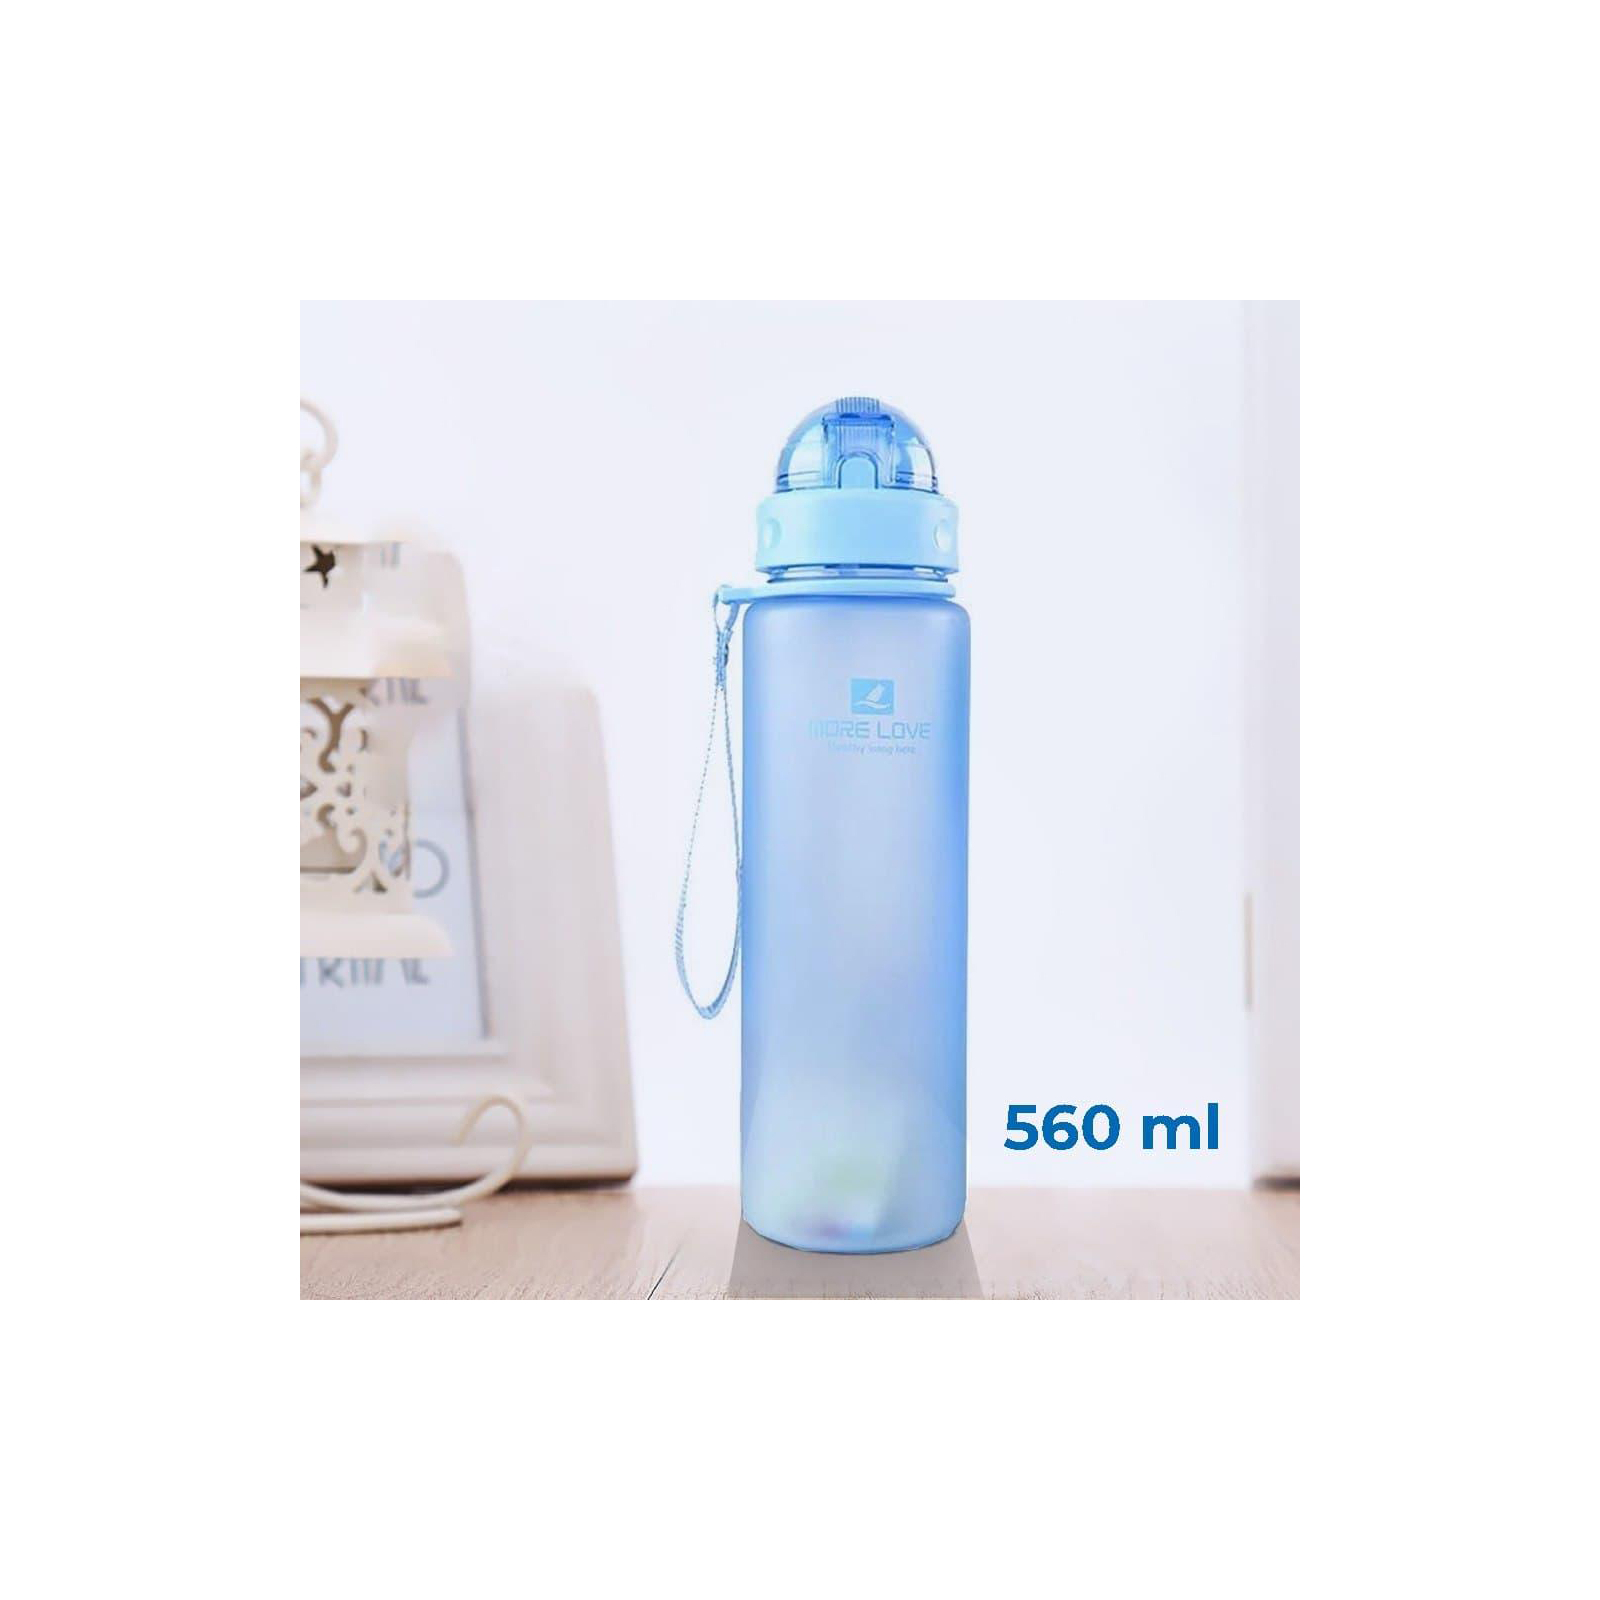 Бутылка для воды Casno 560 мл MX-5029 Зелена (MX-5029_Green) изображение 2